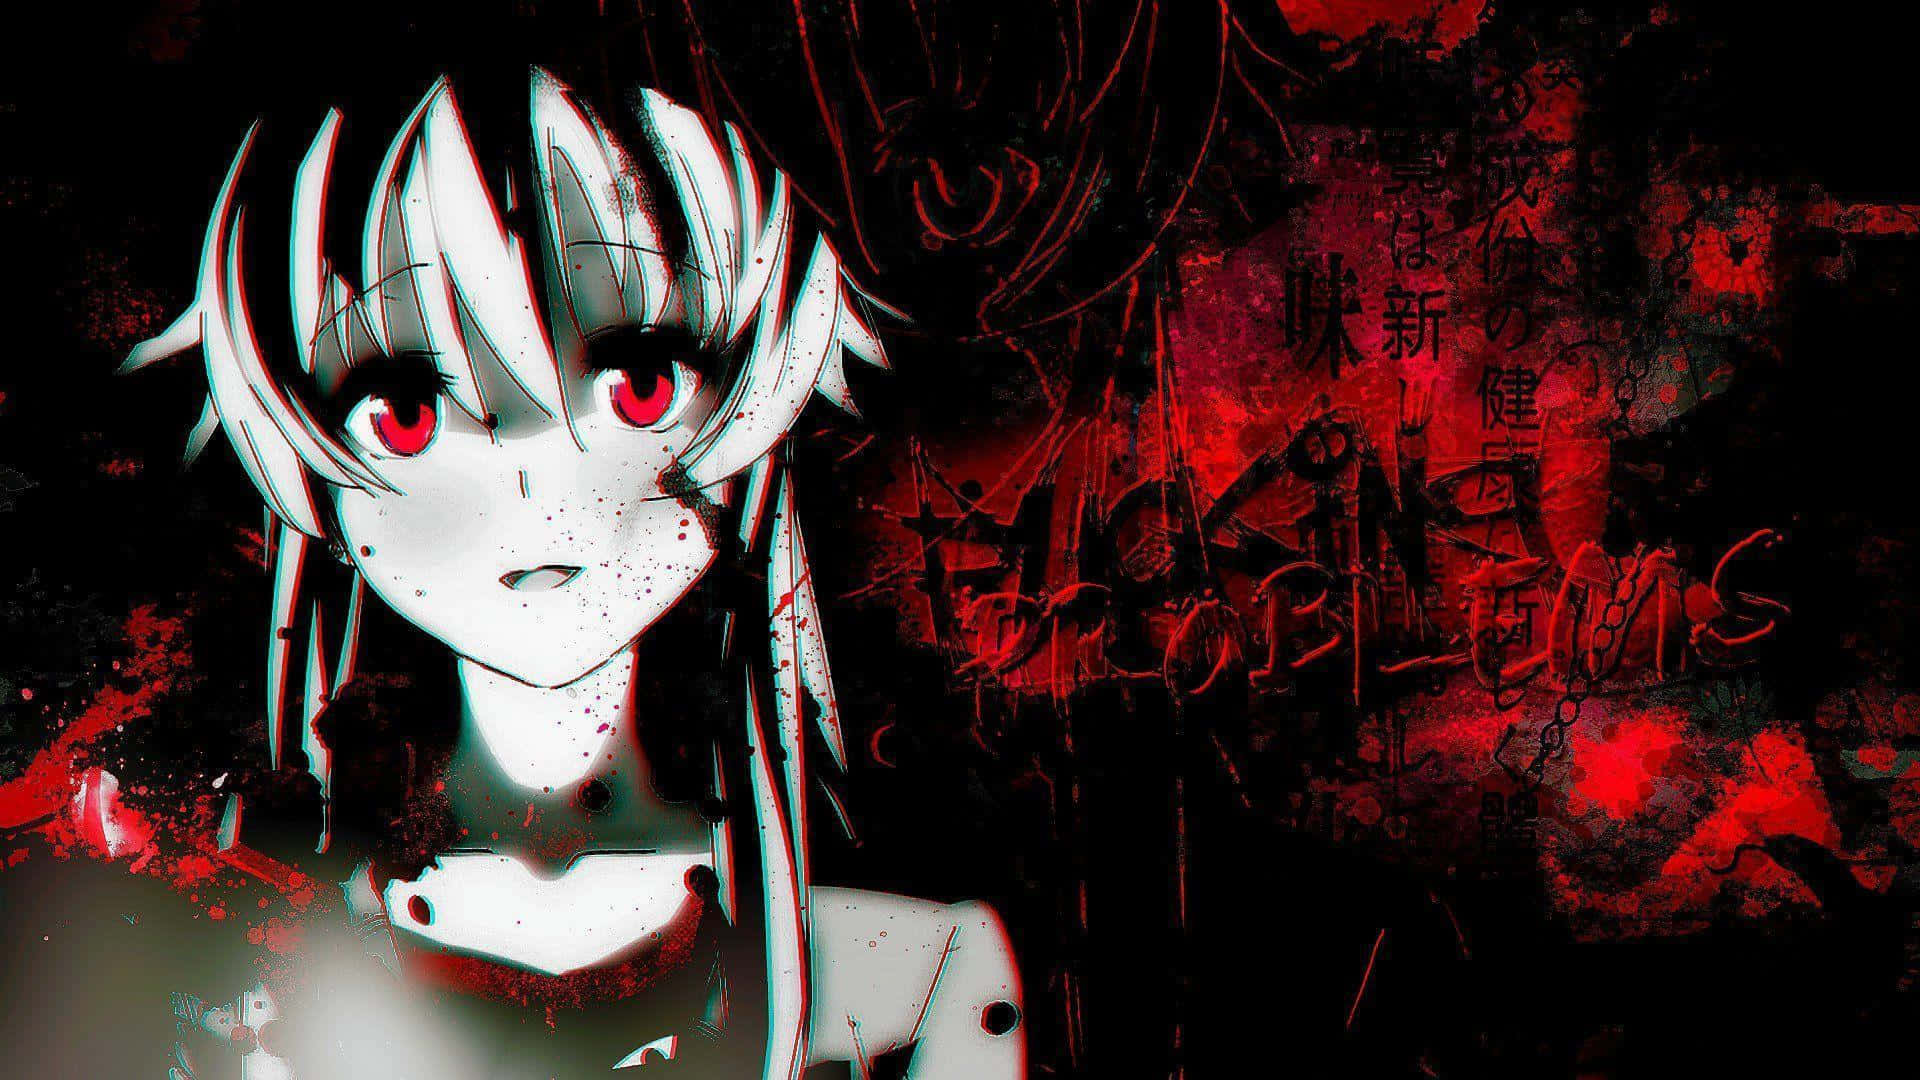 Red Eyed Anime Girl Gore Aesthetic.jpg Wallpaper